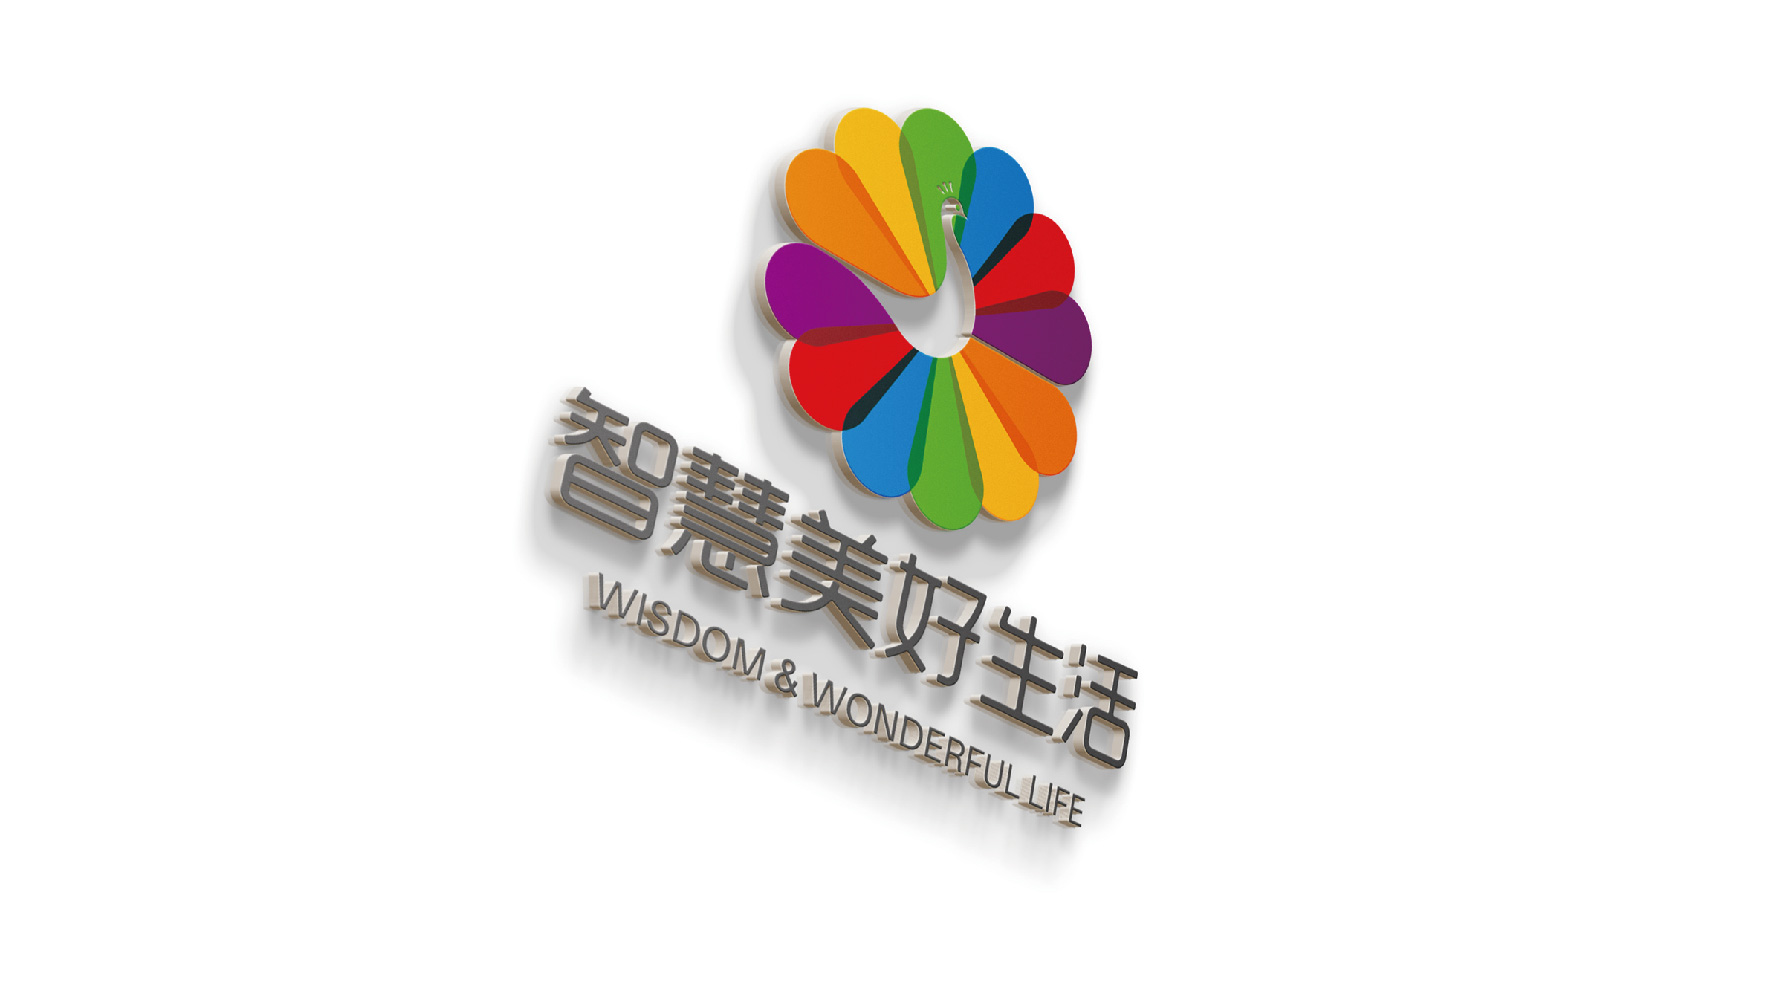 深圳养生logo设计-智慧美好生活标志设计2.jpg